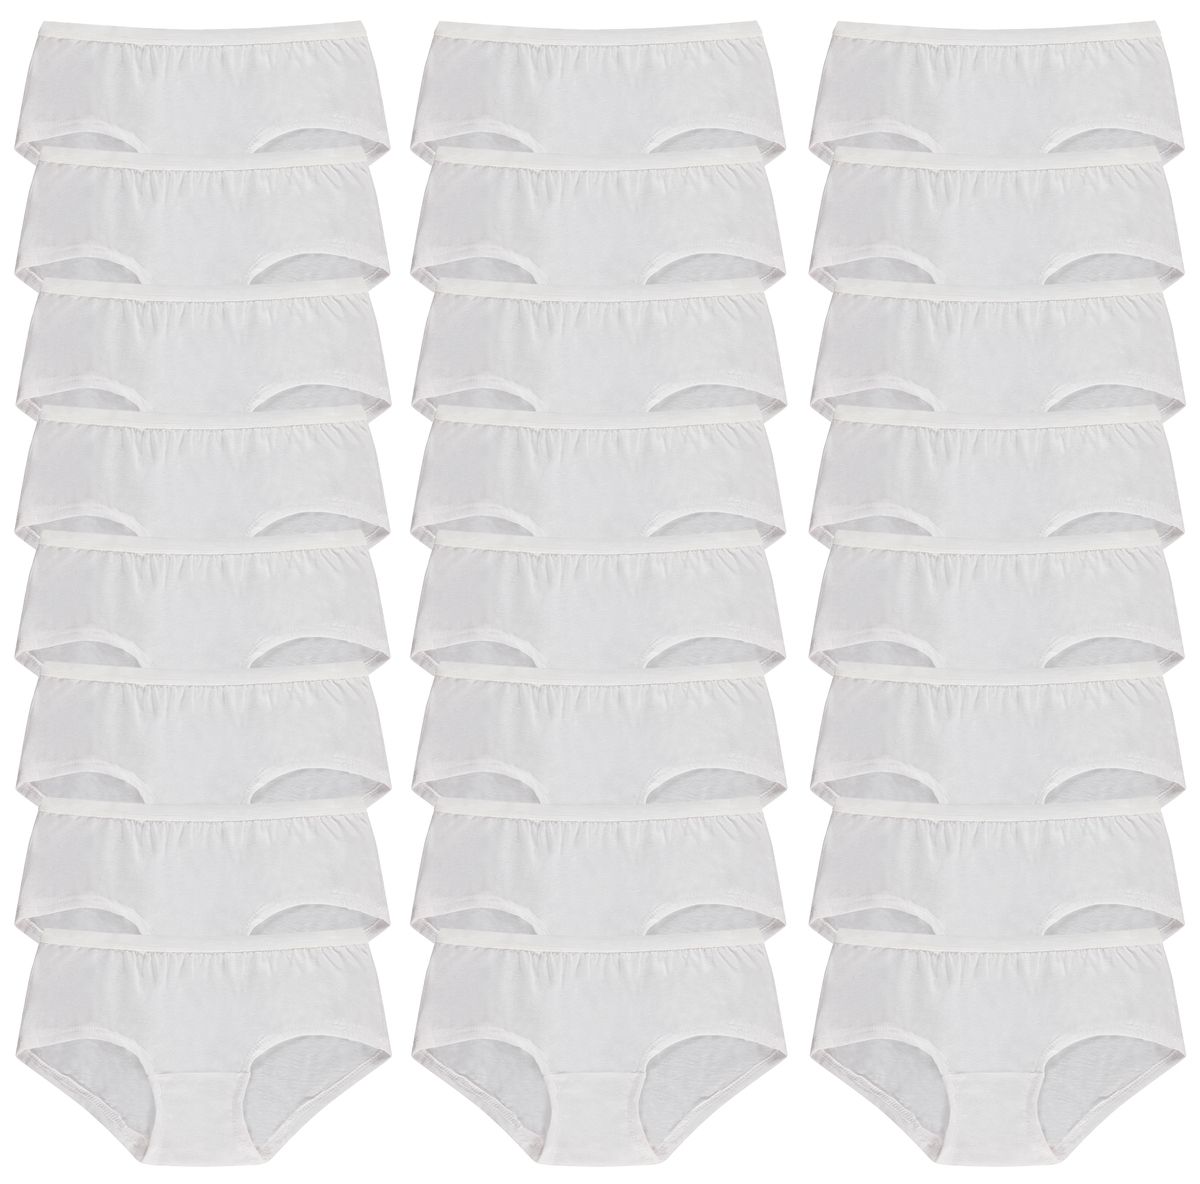 180 Wholesale Yacht & Smith Womens Cotton Lycra Underwear White